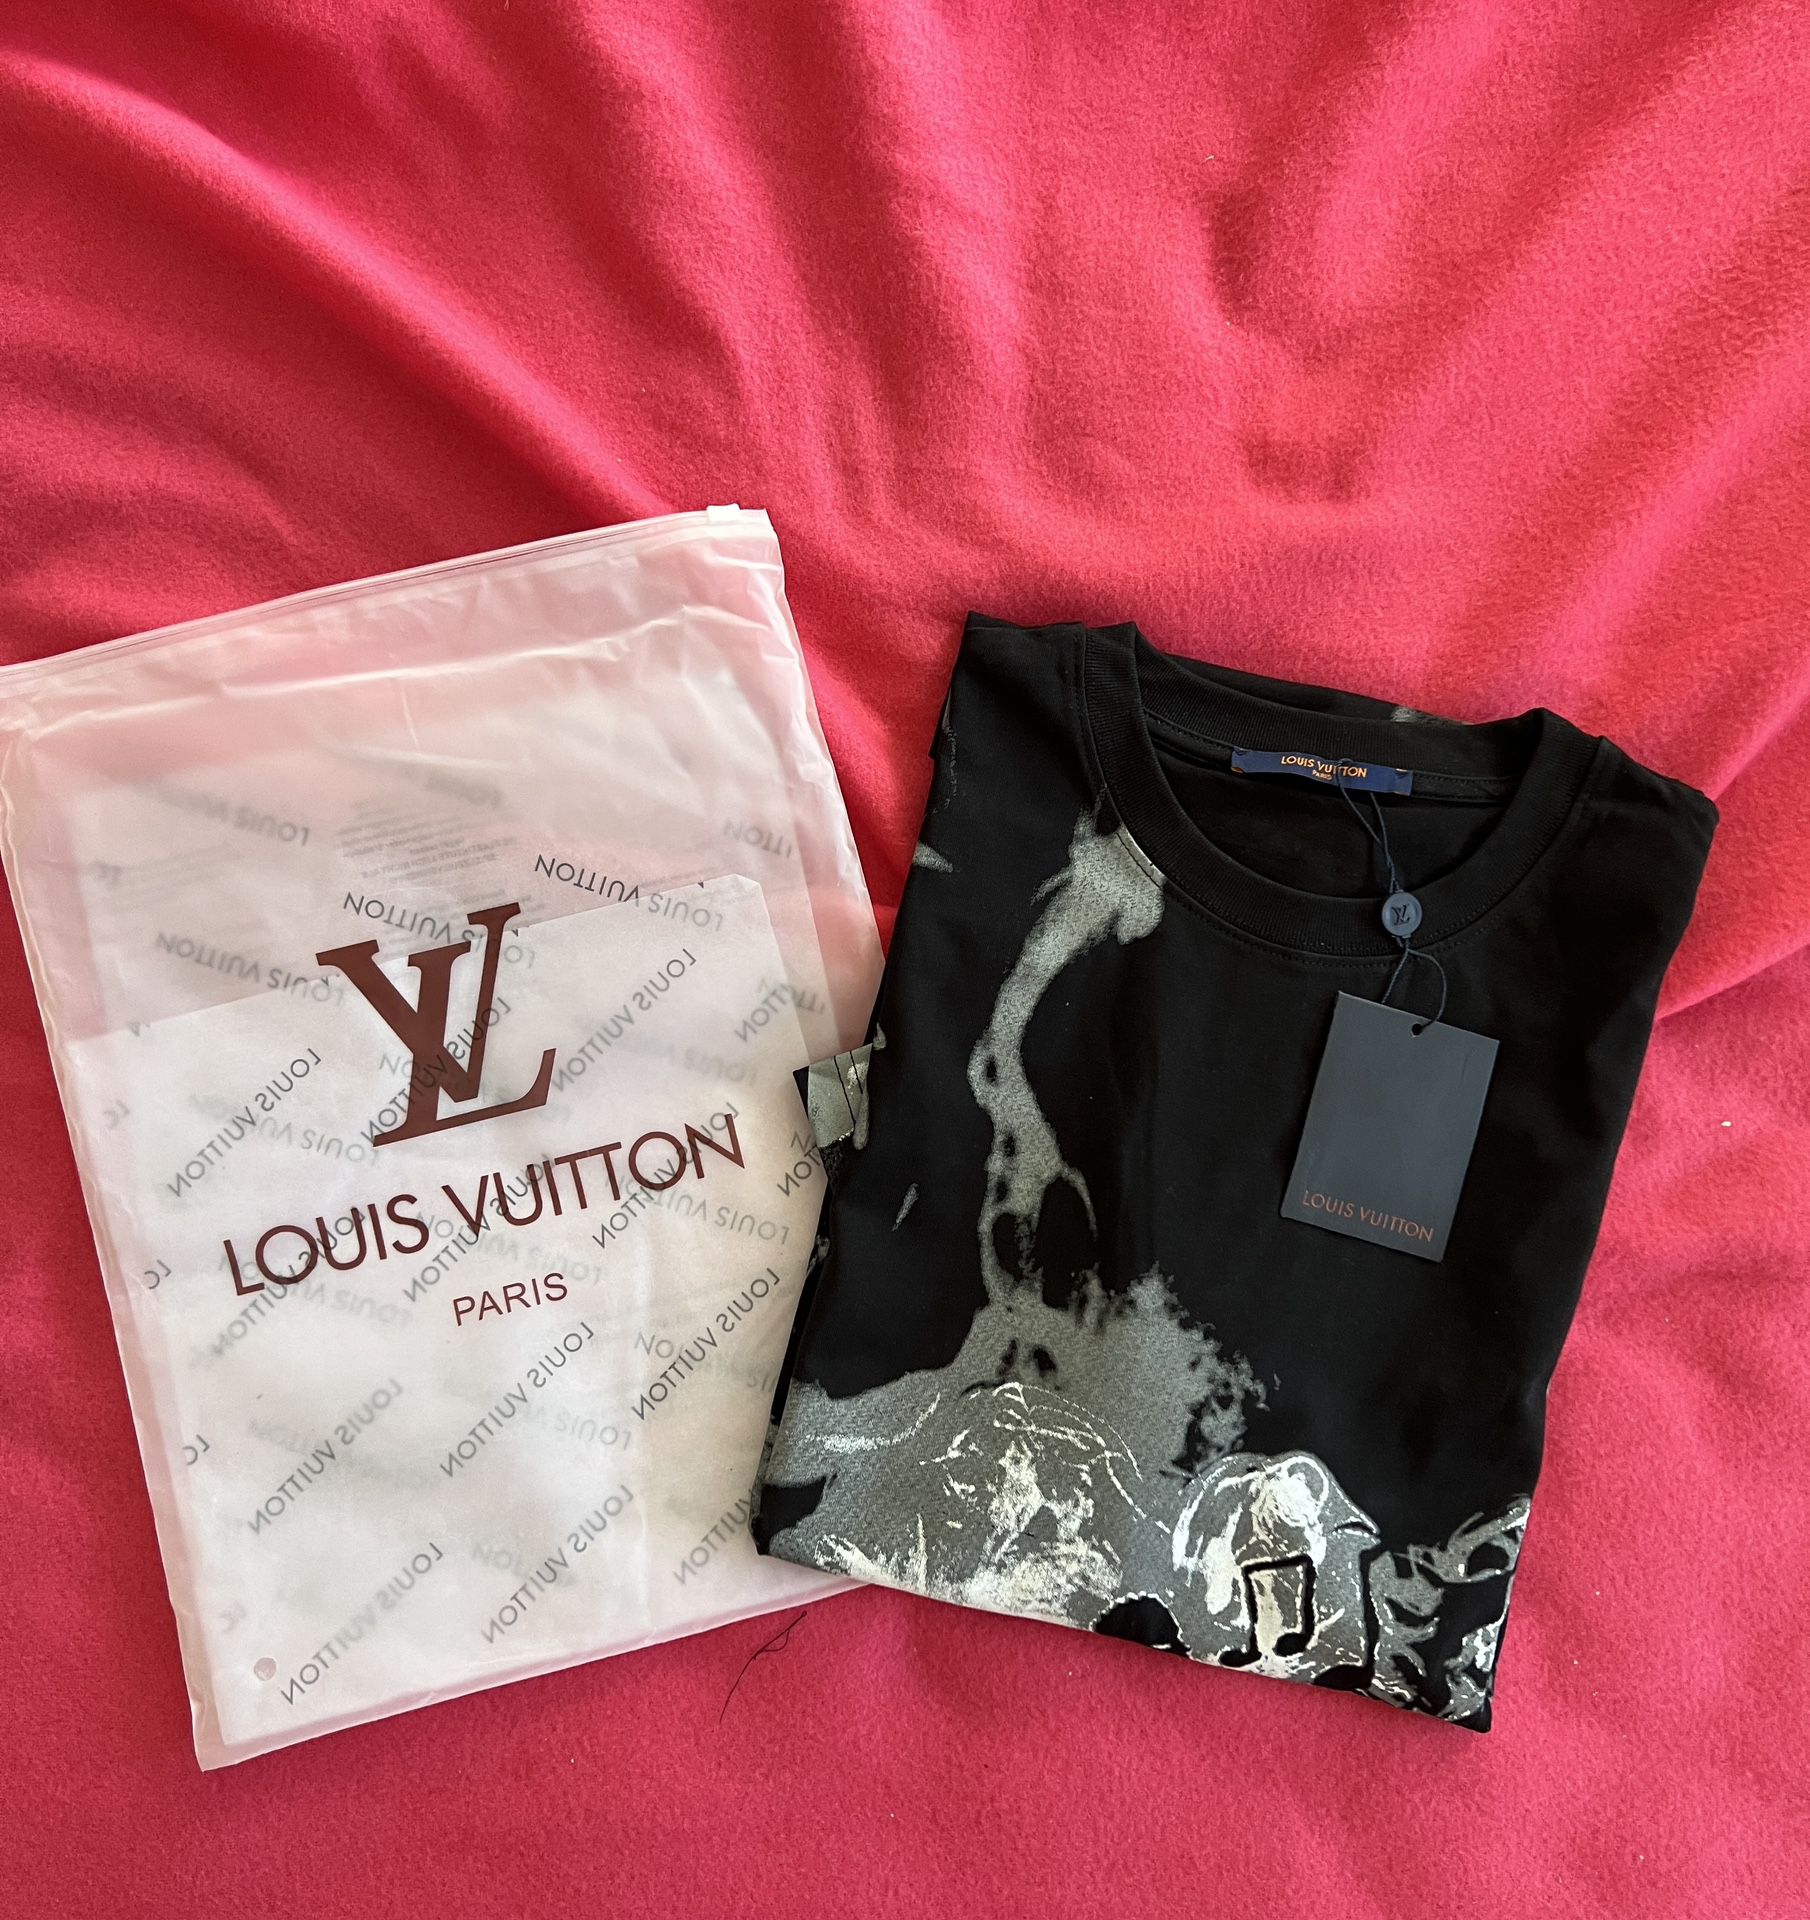 Louis Vuitton T-shirt for Sale in Colorado Springs, CO - OfferUp  Louis  vuitton shirts, Louis vuitton t shirt, Gucci t shirt women